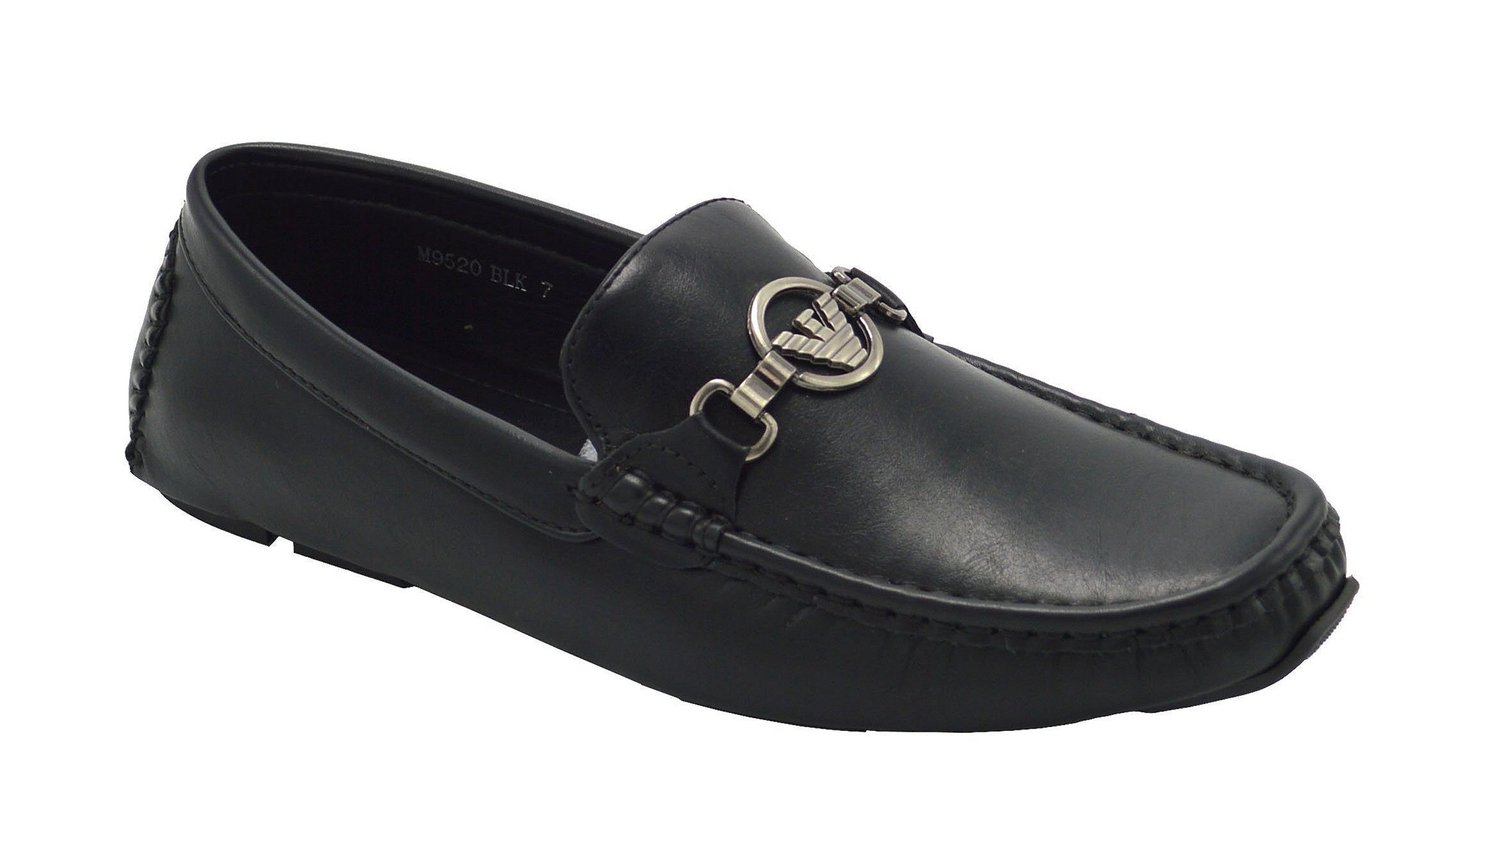 Wholesale Men's Shoes For Men Dress Loafer Byron NG90